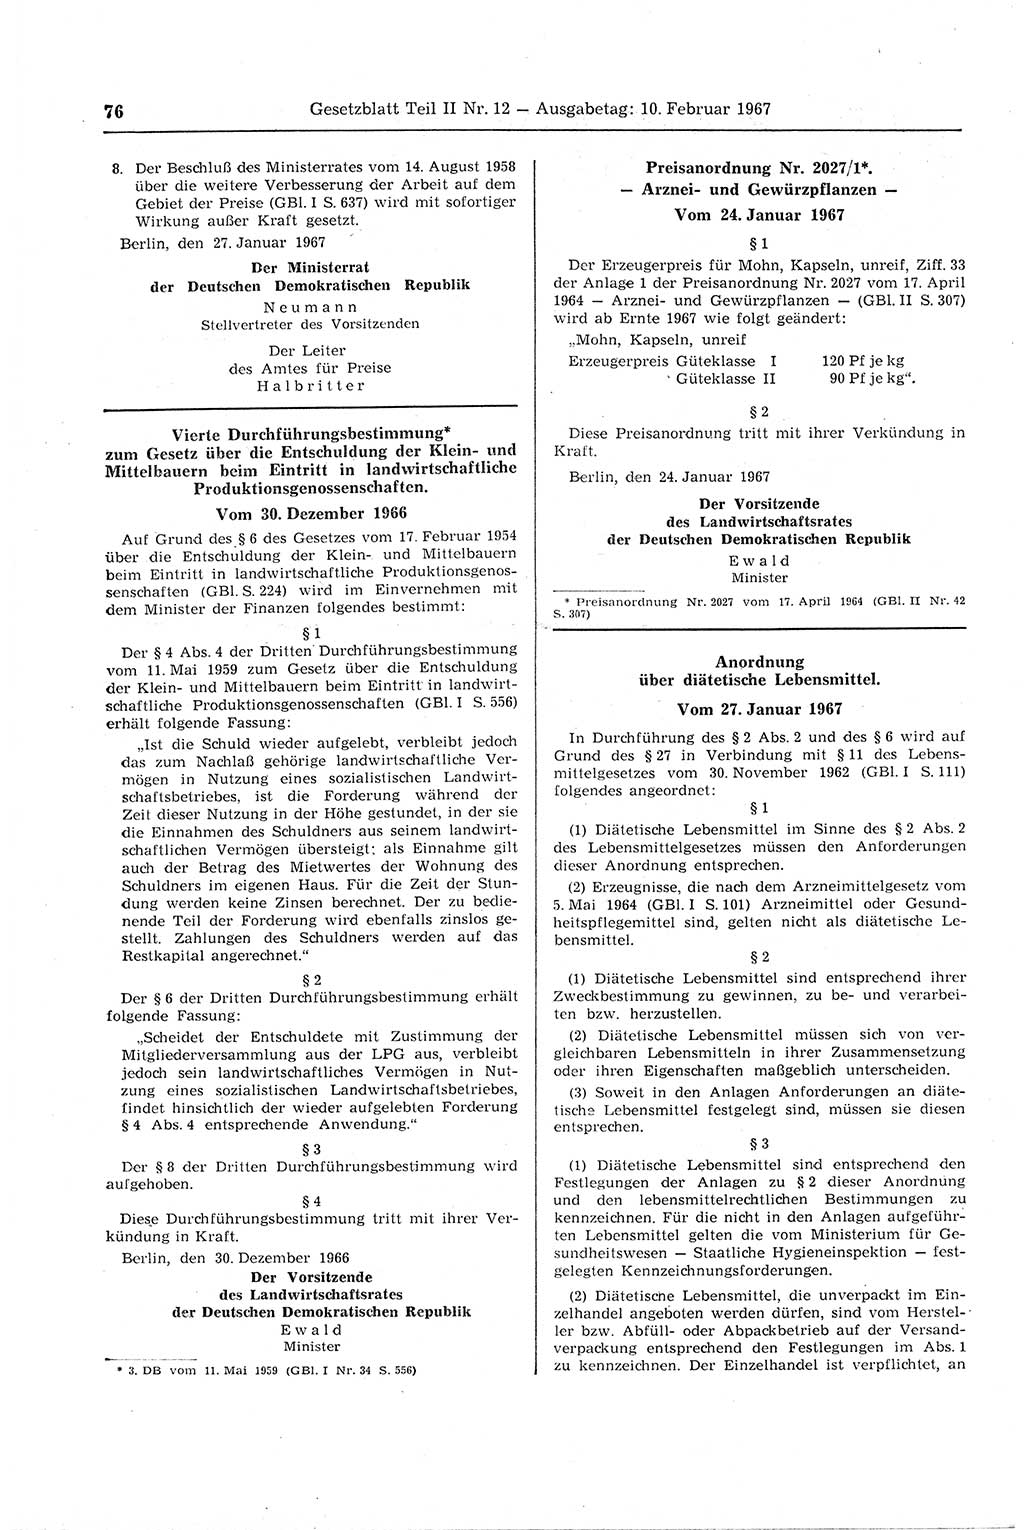 Gesetzblatt (GBl.) der Deutschen Demokratischen Republik (DDR) Teil ⅠⅠ 1967, Seite 76 (GBl. DDR ⅠⅠ 1967, S. 76)